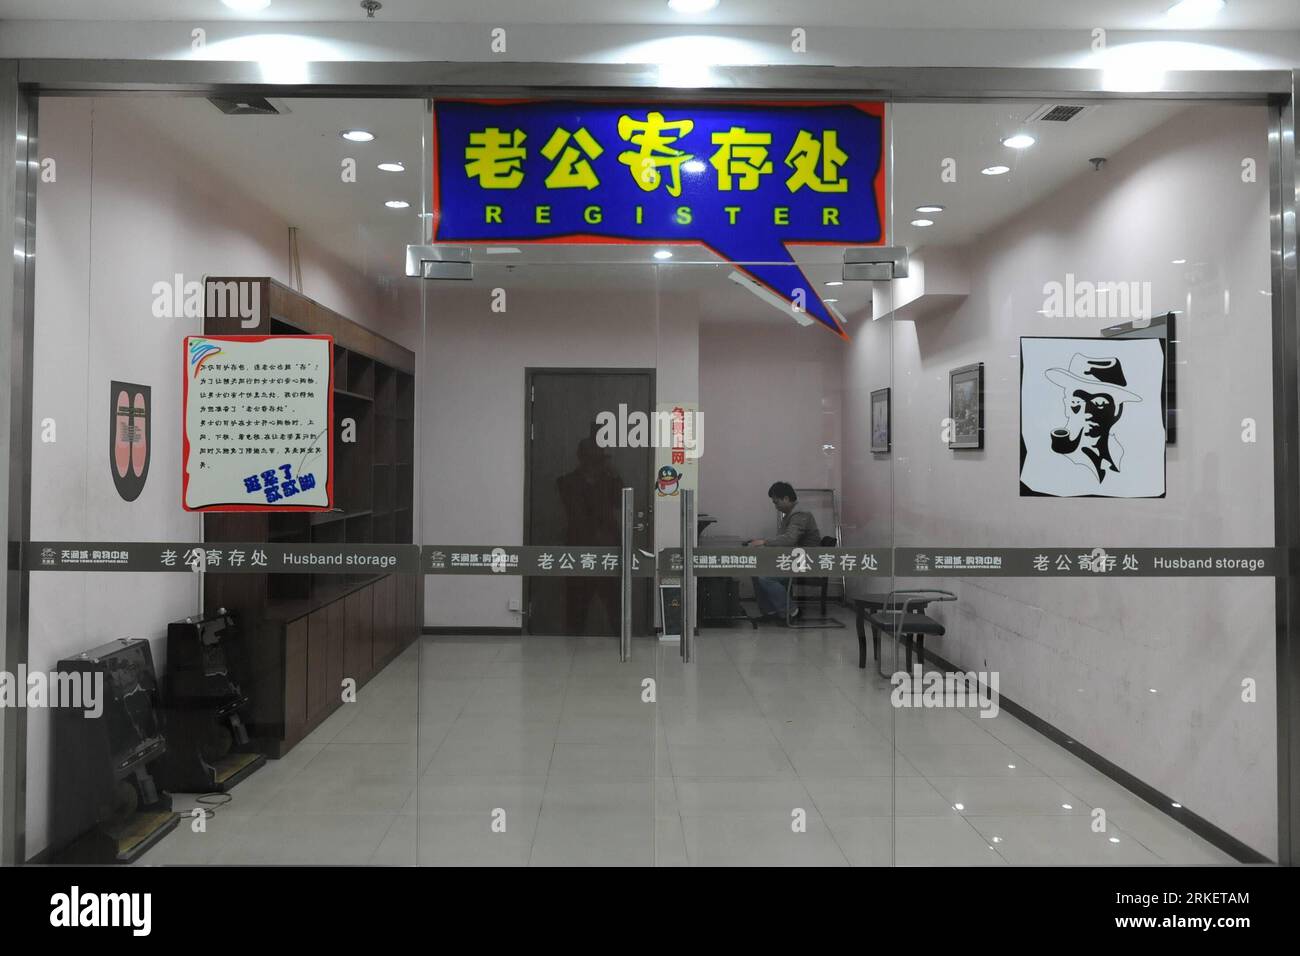 Bildnummer : 55290618 Datum : 26.04.2011 Copyright : imago/Xinhua (110426) -- TIANCHANG, 26 avril 2011 (Xinhua) -- un homme surfe sur Internet dans l'entrepôt du mari d'un centre commercial à Tianchang, dans la province de l'Anhui dans l'est de la Chine. Les maris ont un accès gratuit pour surfer sur Internet, regarder la télévision, lire des journaux et des magazines, écouter de la musique ou jouer aux échecs dans le stockage. (Xinhua/Song Weixing)(lx) CHINA-ANHUI-TIANCHANG-HUSBAND STORAGE (CN) PUBLICATIONxNOTxINxCHN Wirtschaft Ehemänner Shop kbdig xub 2011 quer o0 kurios, Aufenthaltsraum, Einkaufen, shoppen Bildnummer 55290618 Date 26 04 2011 Copyright Imag Banque D'Images